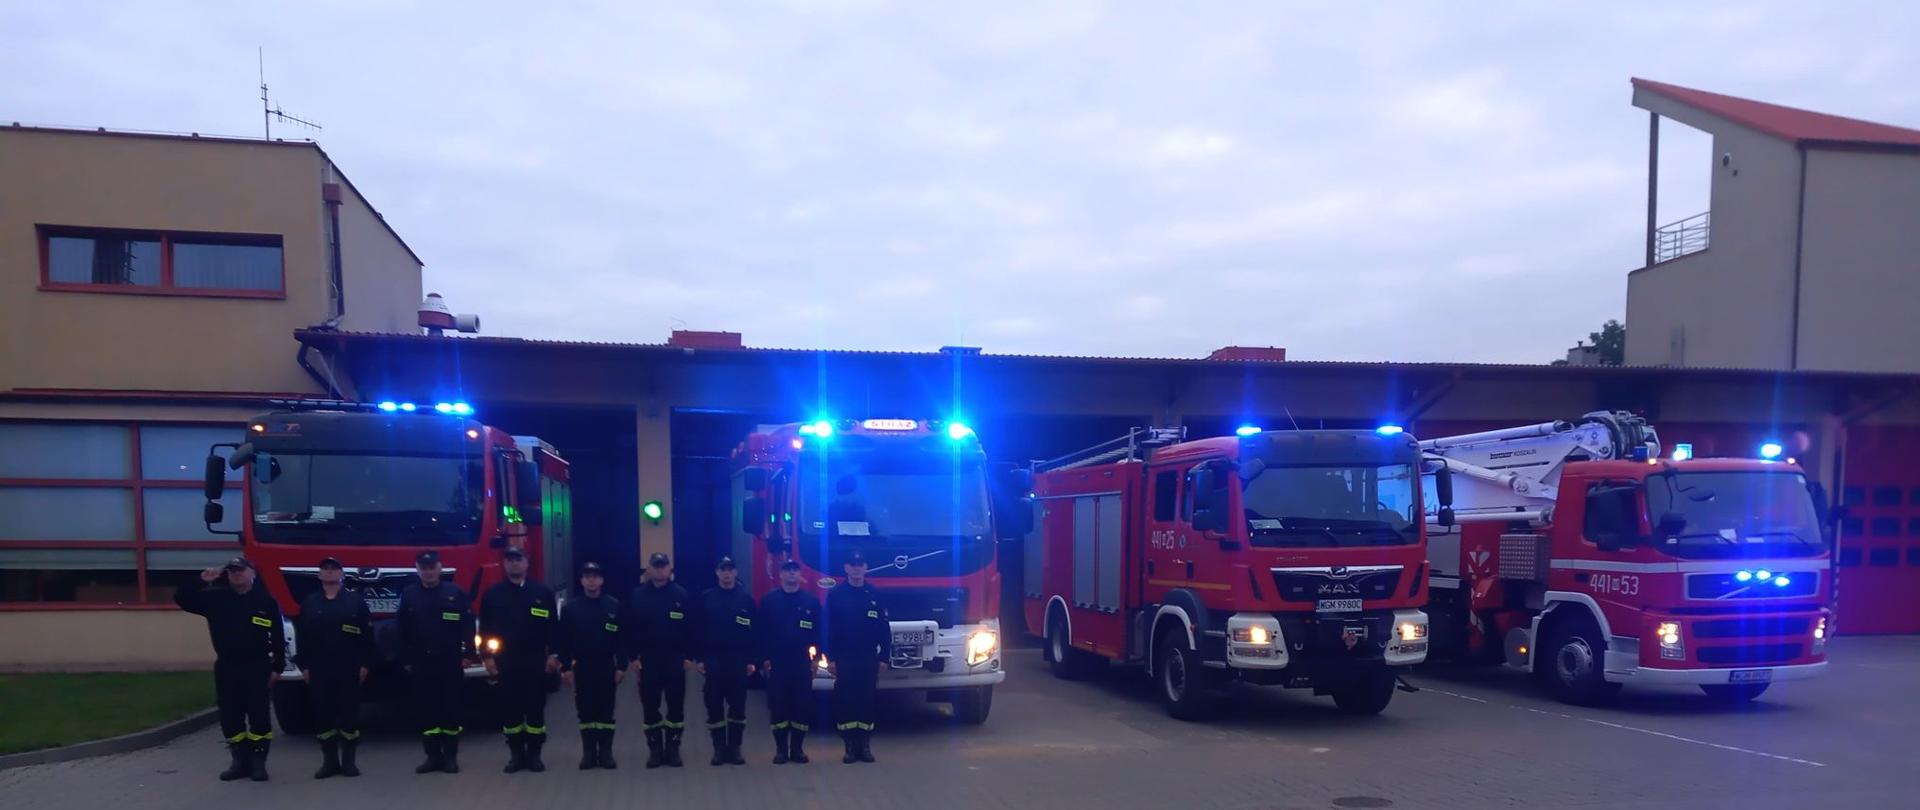 9 strażaków w ubraniach koszarowych stoi przed garażami za nimi stoją samochody ratowniczo-gaśnicze i specjalne z włączonymi sygnałami świetlnymi i dźwiękowymi w celu uczczenia pamięci tragicznie zmarłego strażaka JRG Skierniewice.